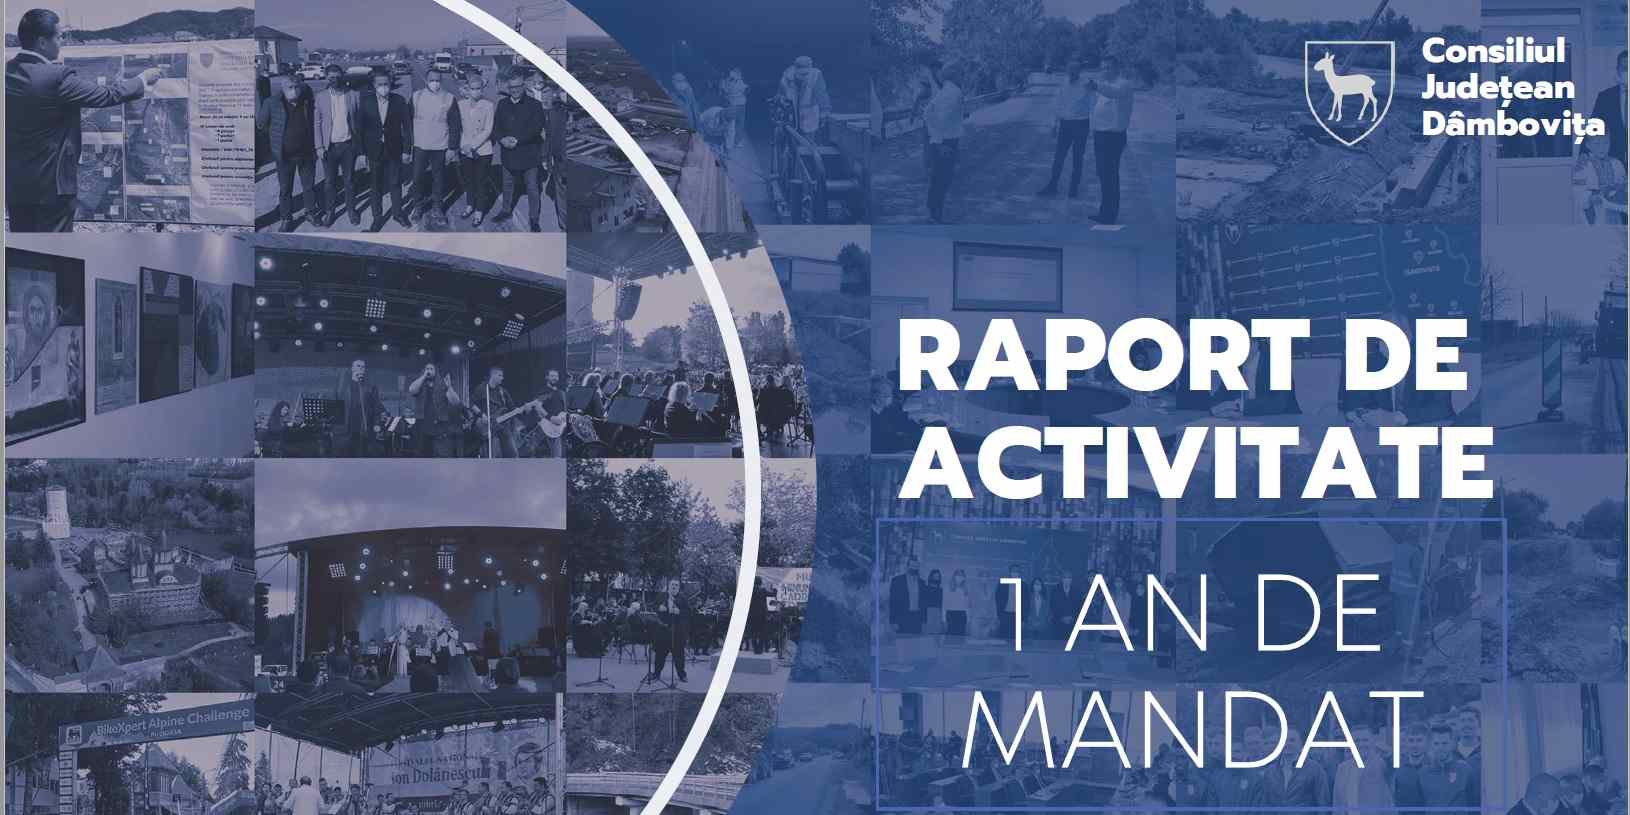  Raport de activitate - 1 an de mandat